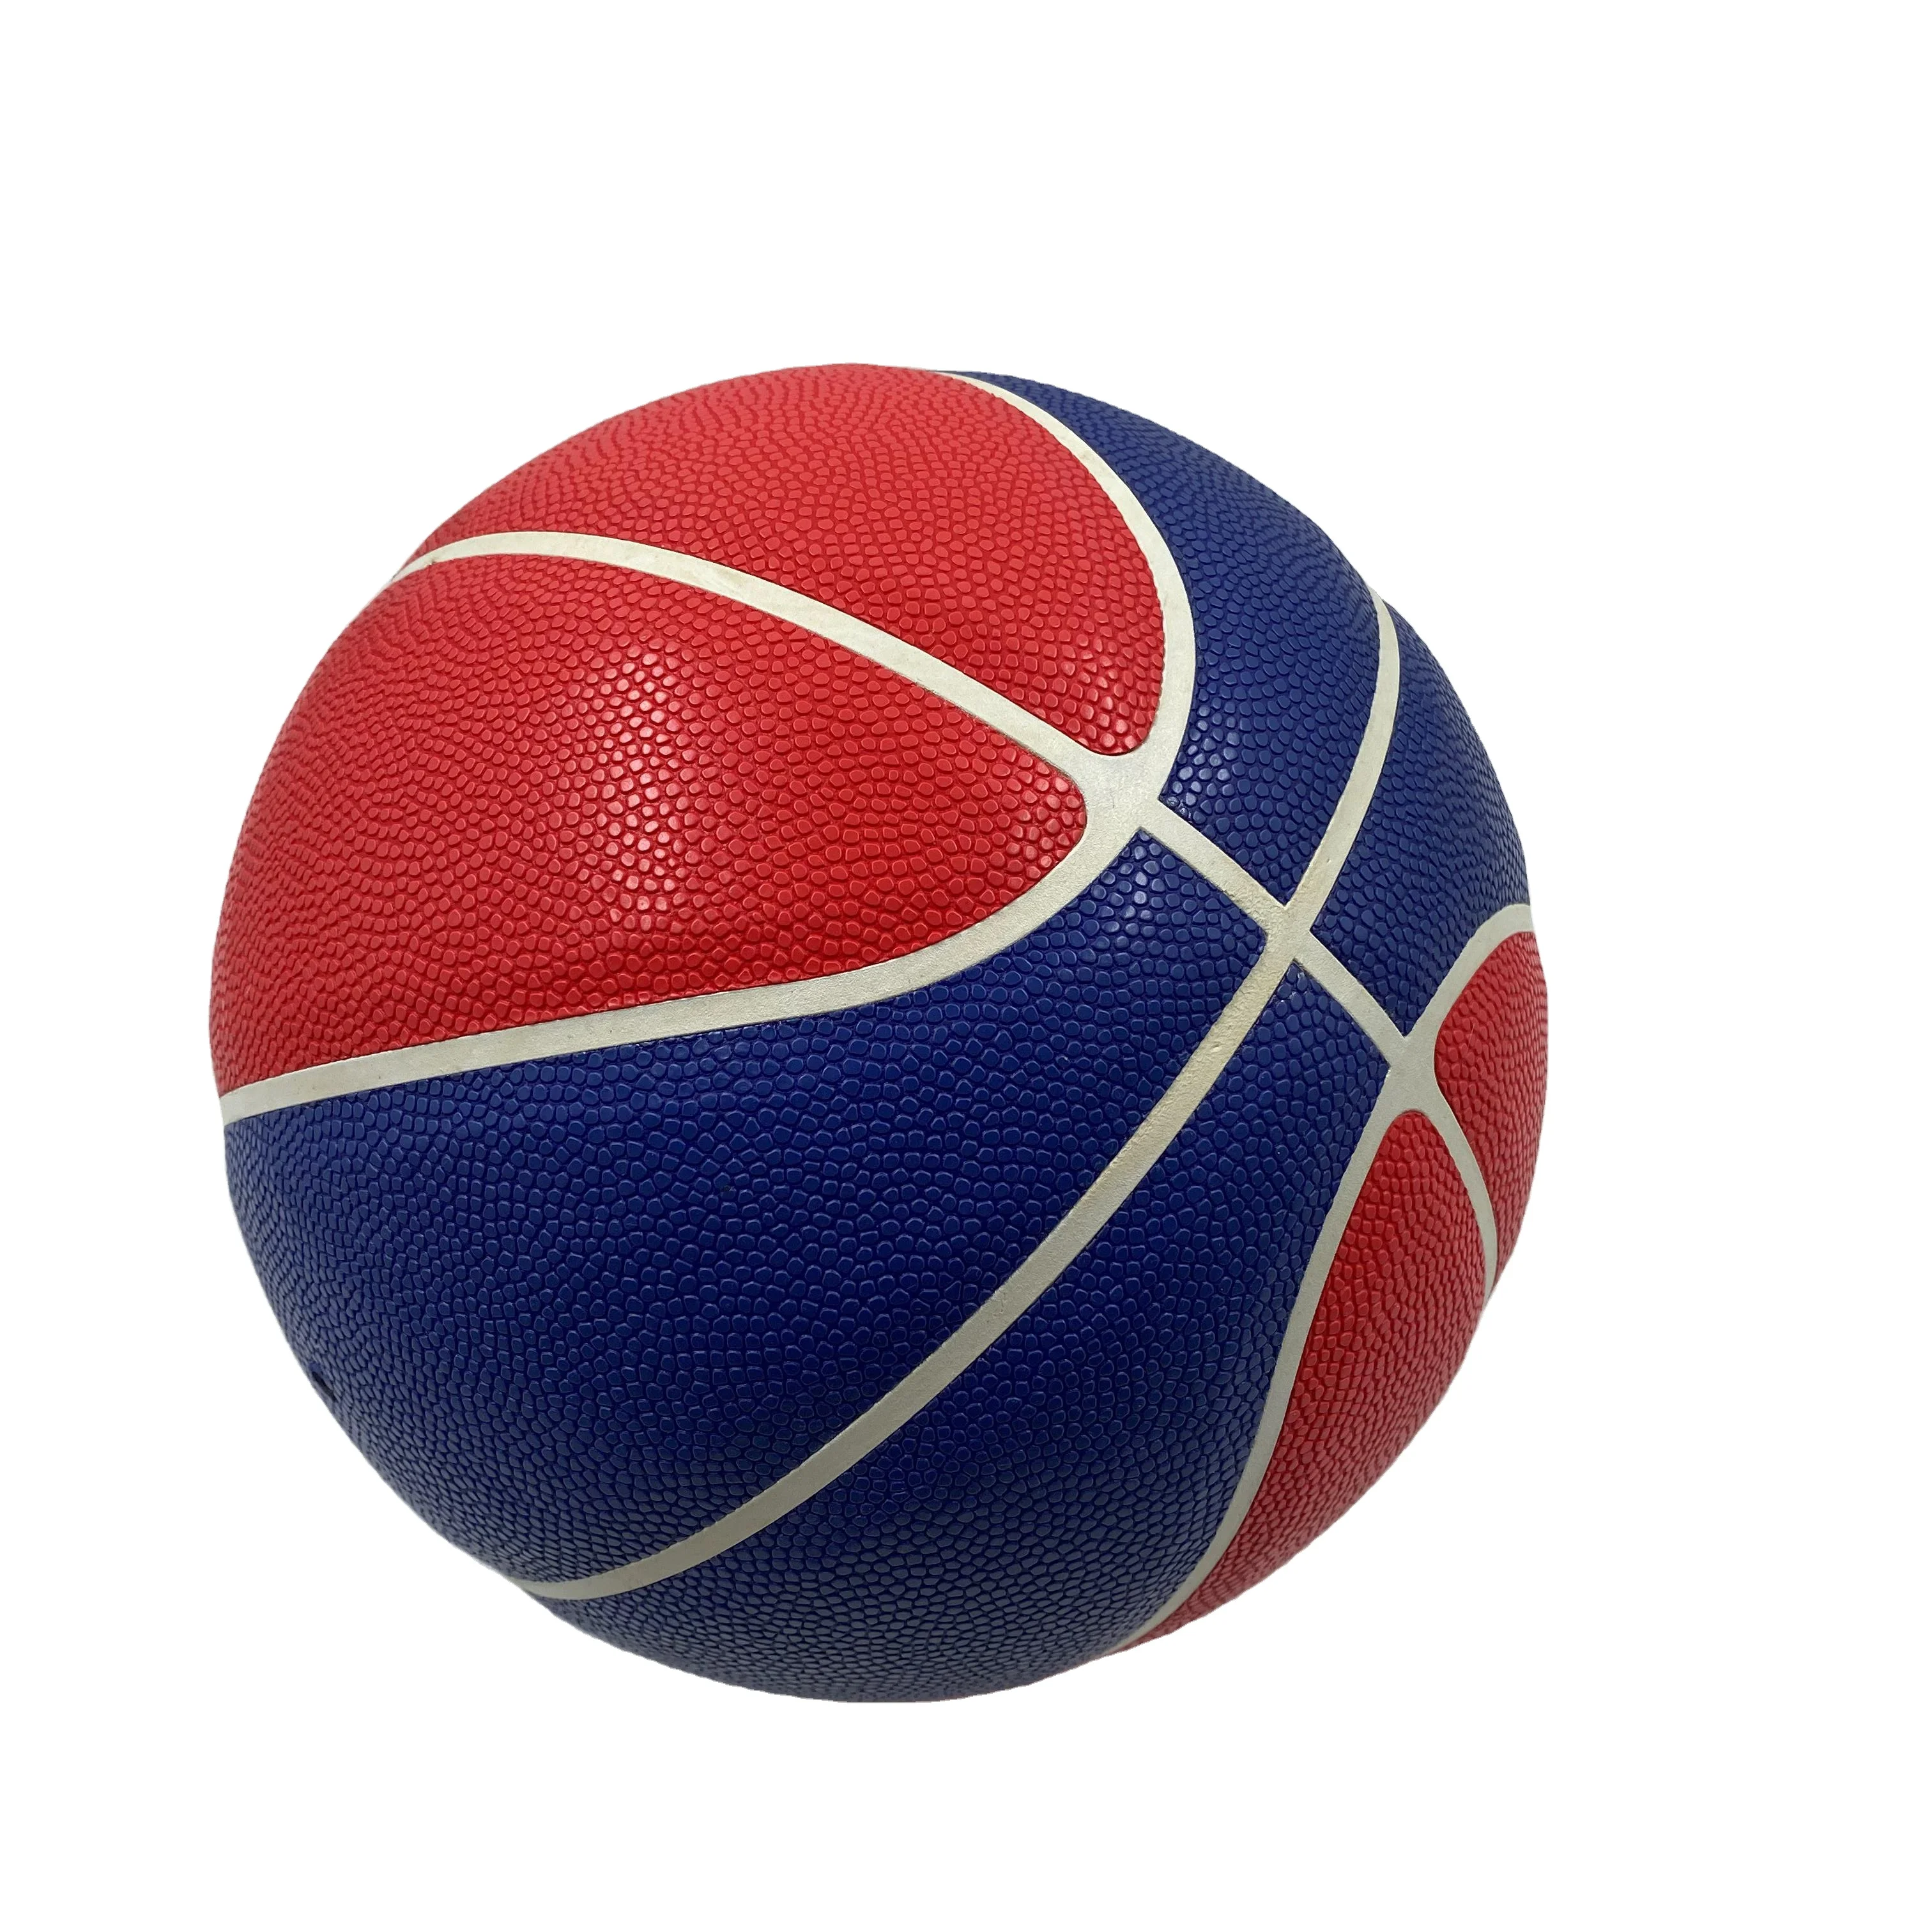 Catálogo de fabricantes de Basketball Ball Size 5 de alta calidad y  Basketball Ball Size 5 en Alibaba.com